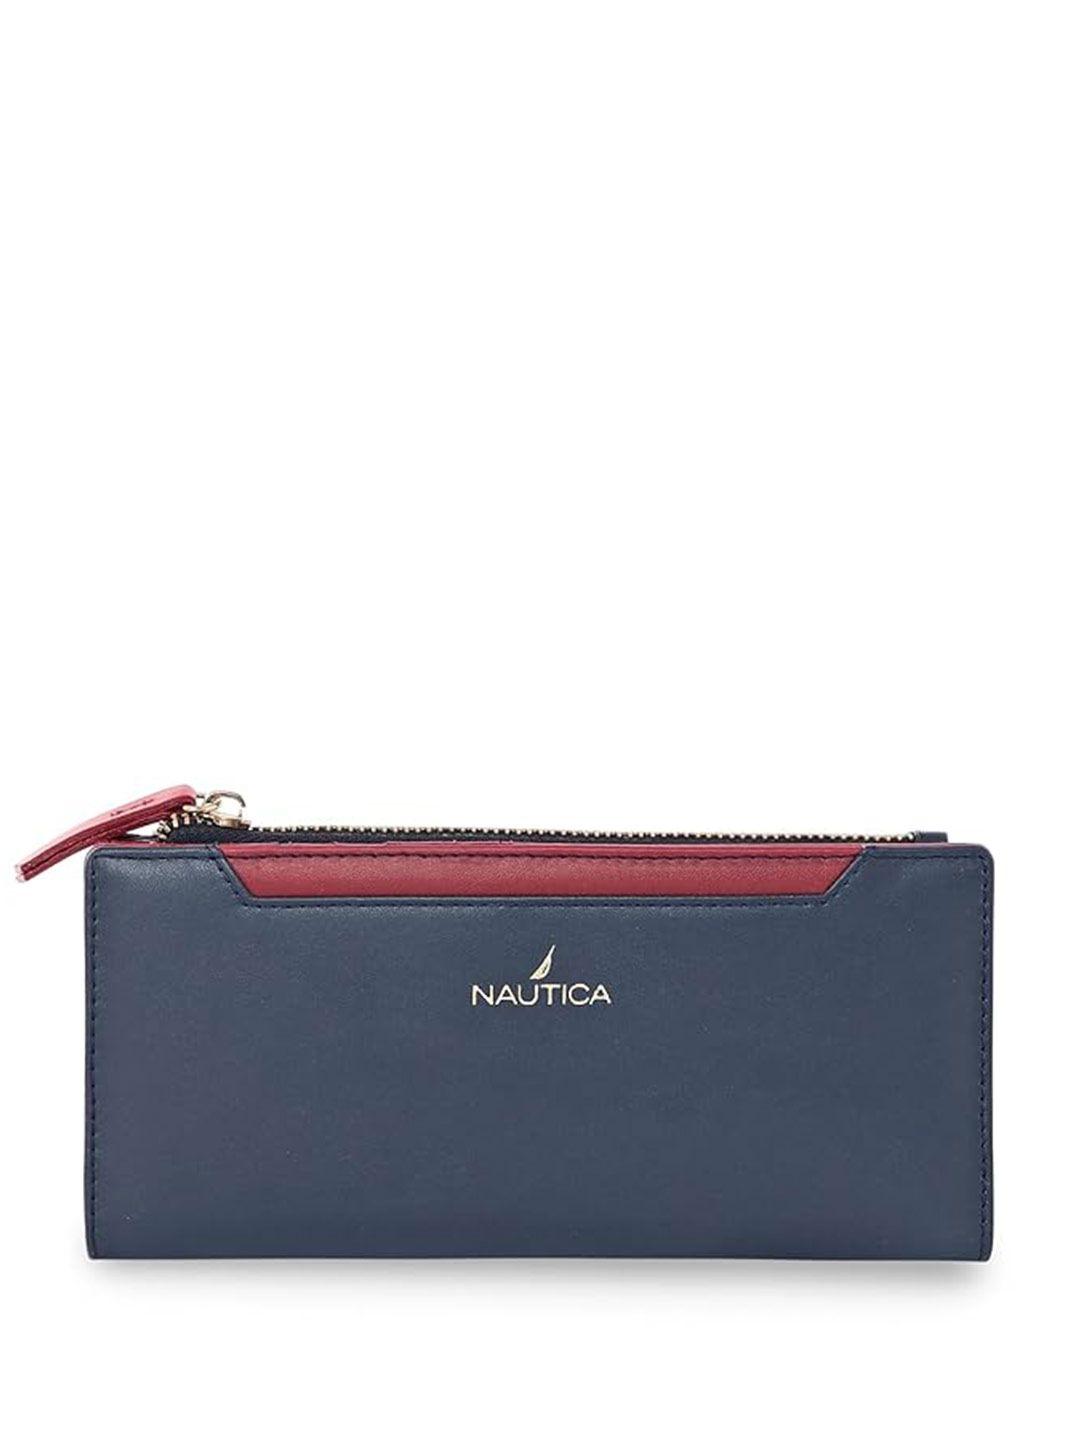 nautica women two fold wallet